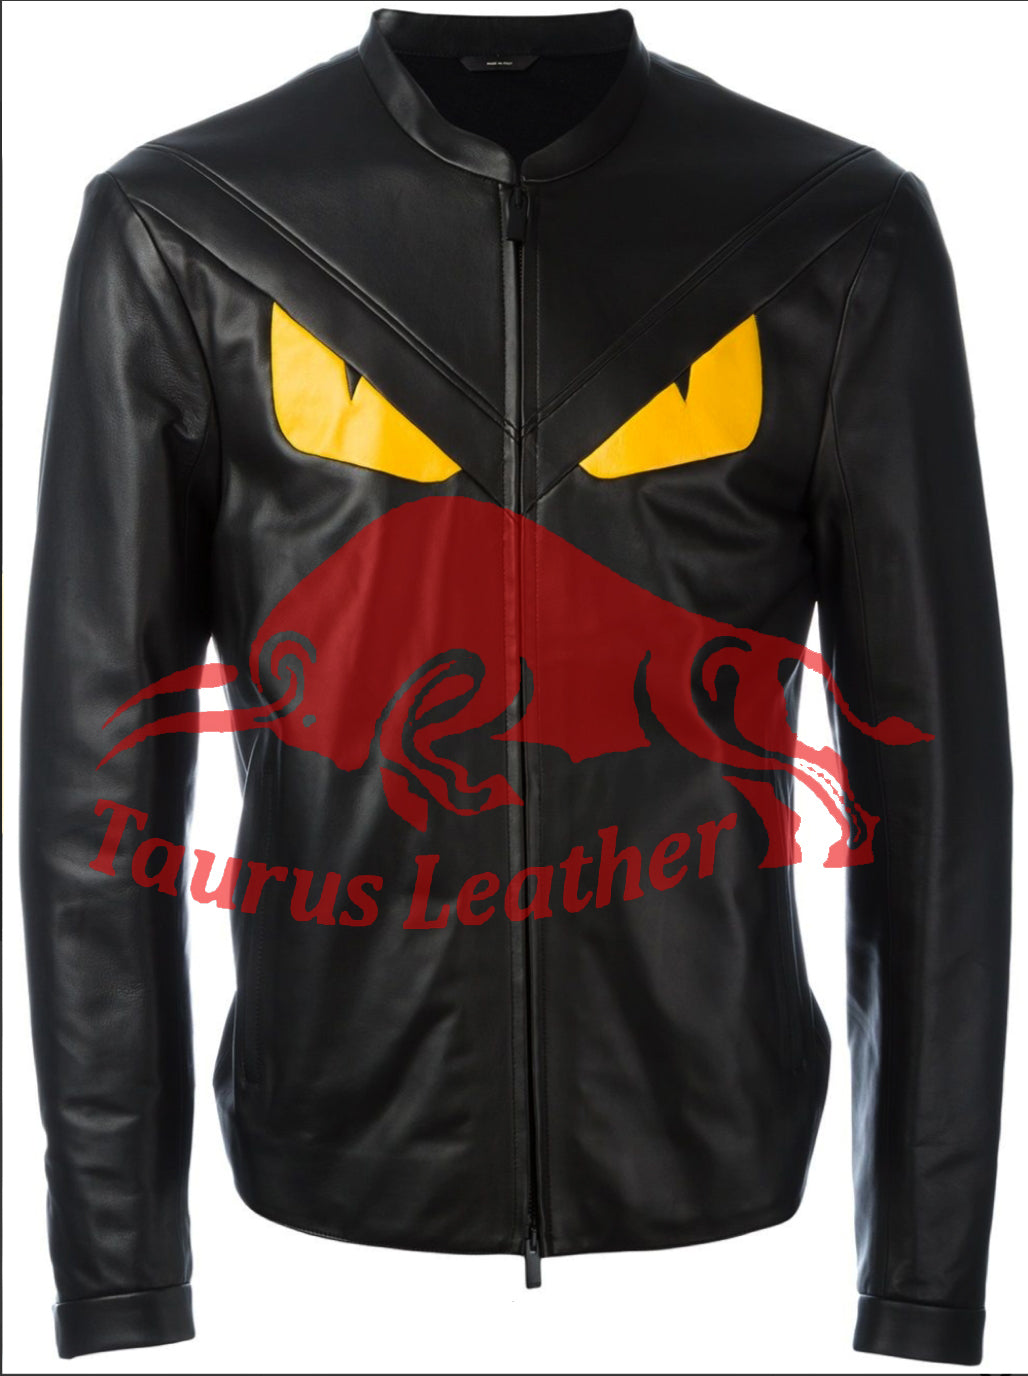 TAURUS LEATHER Black Sheep Leather Jacket with Snake Eye design